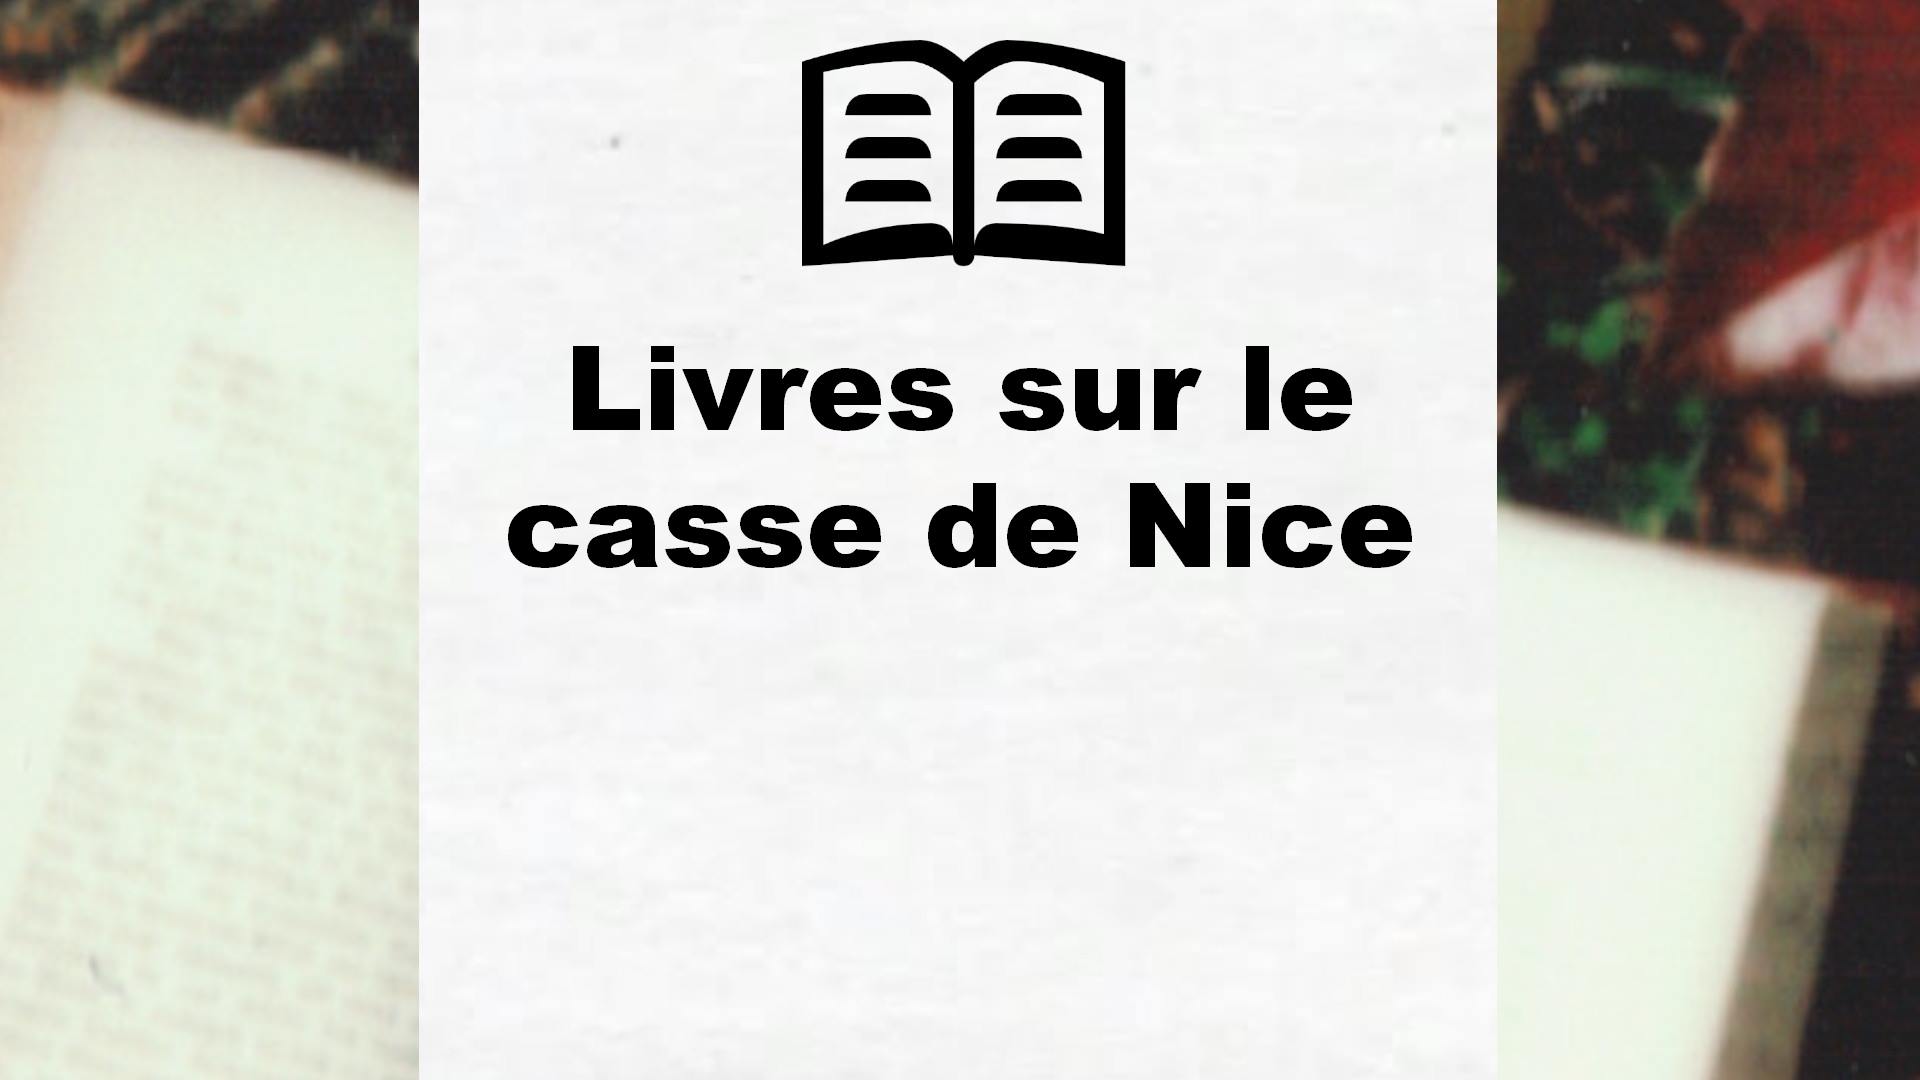 Livres sur le casse de Nice